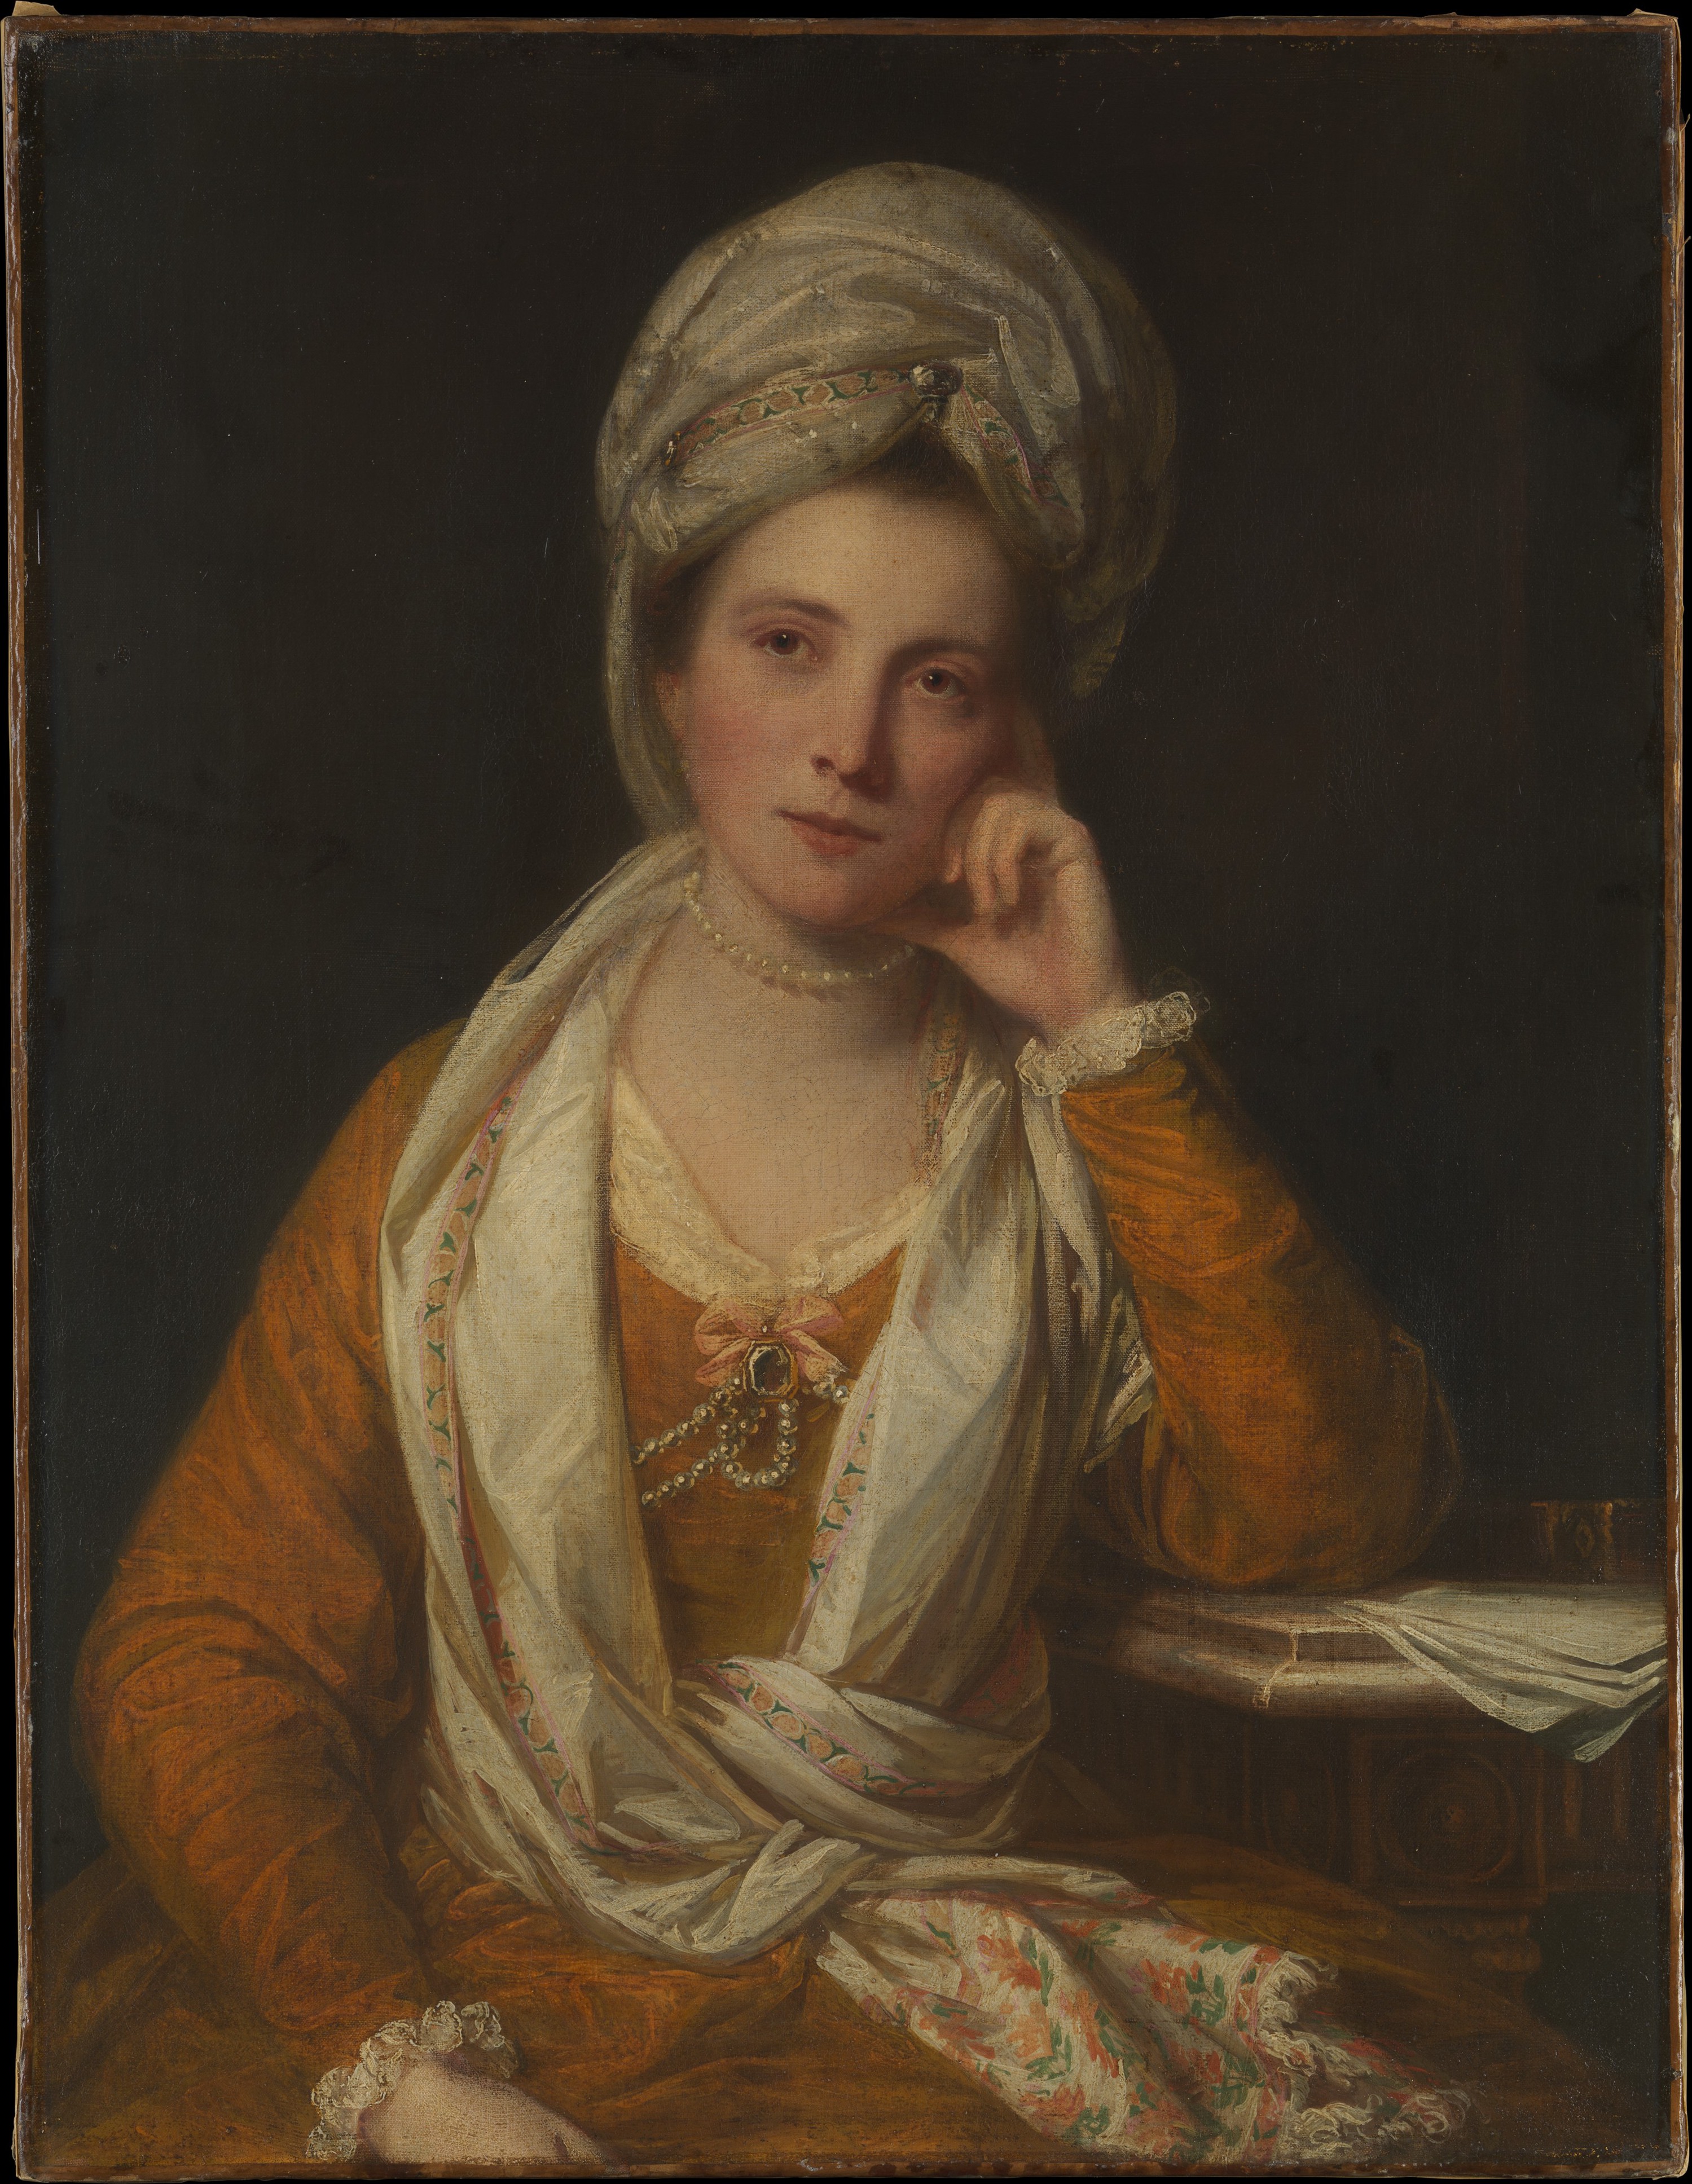 霍顿夫人，后来的子爵夫人梅纳德 by 约书亚 · 雷诺兹 - 1770s - 92.1 x 71.1 cm 